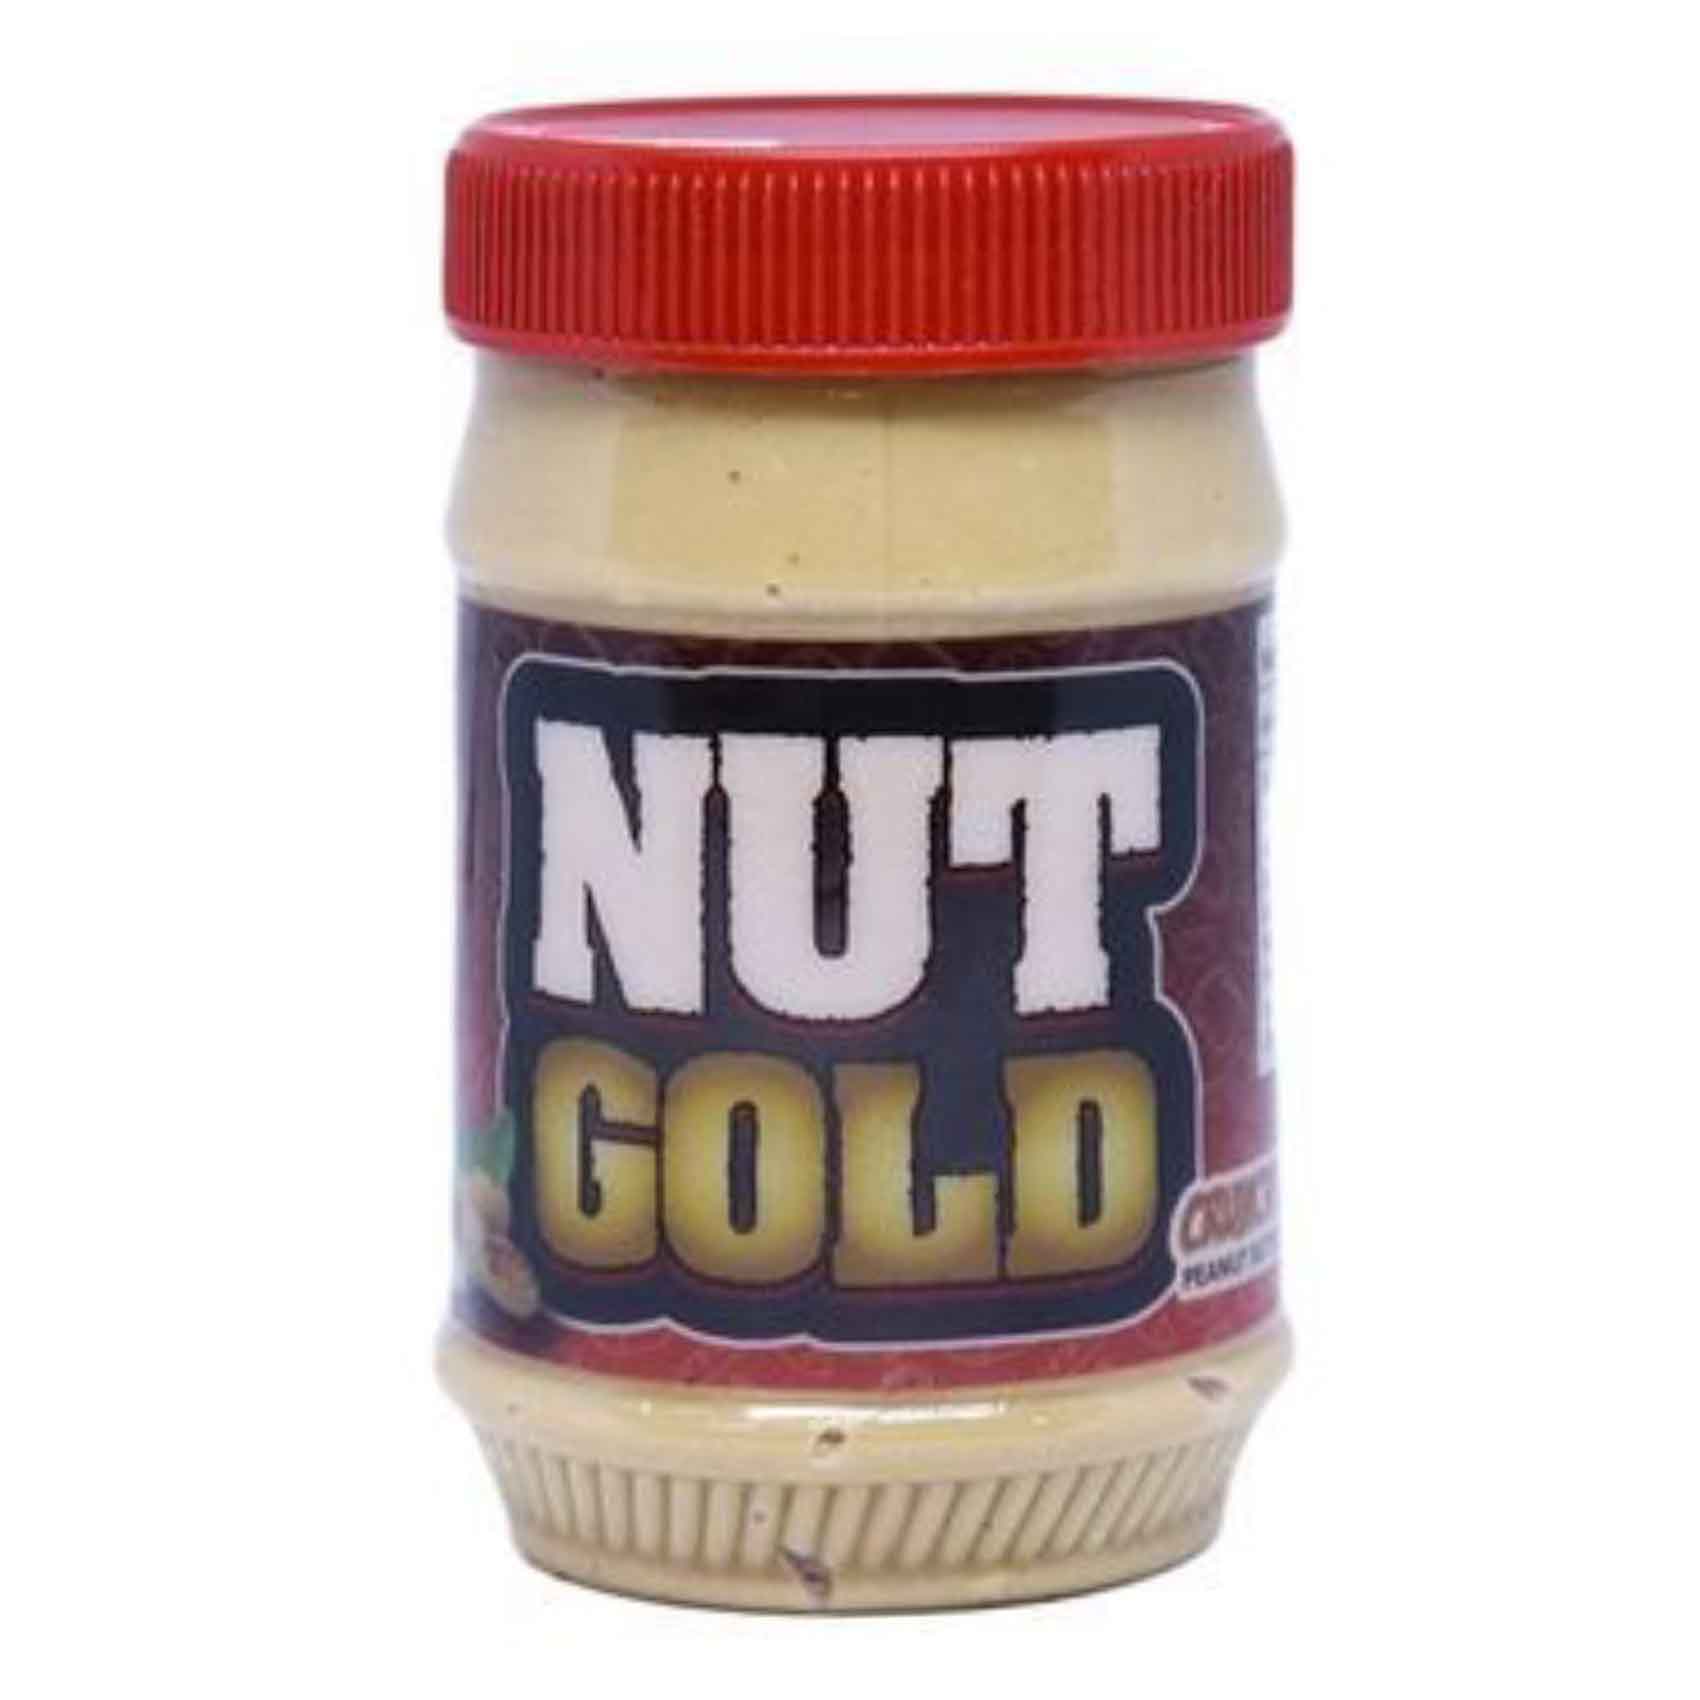 Nut Gold Crunchy Peanut Butter 500g